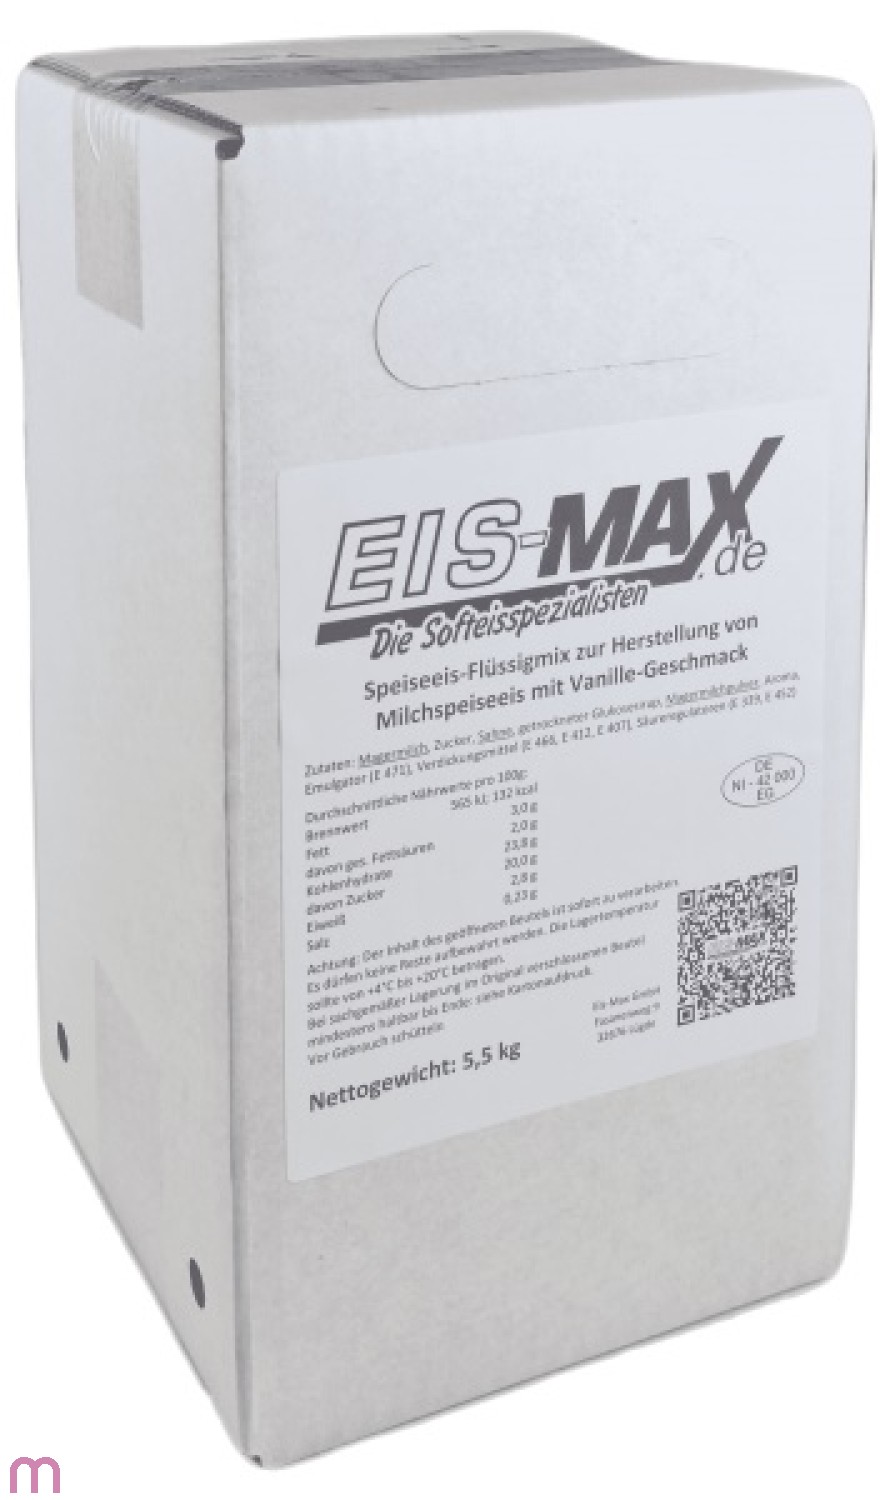 Eismax Softeismix flüssig Vanille 3%MF 5 Liter BiB